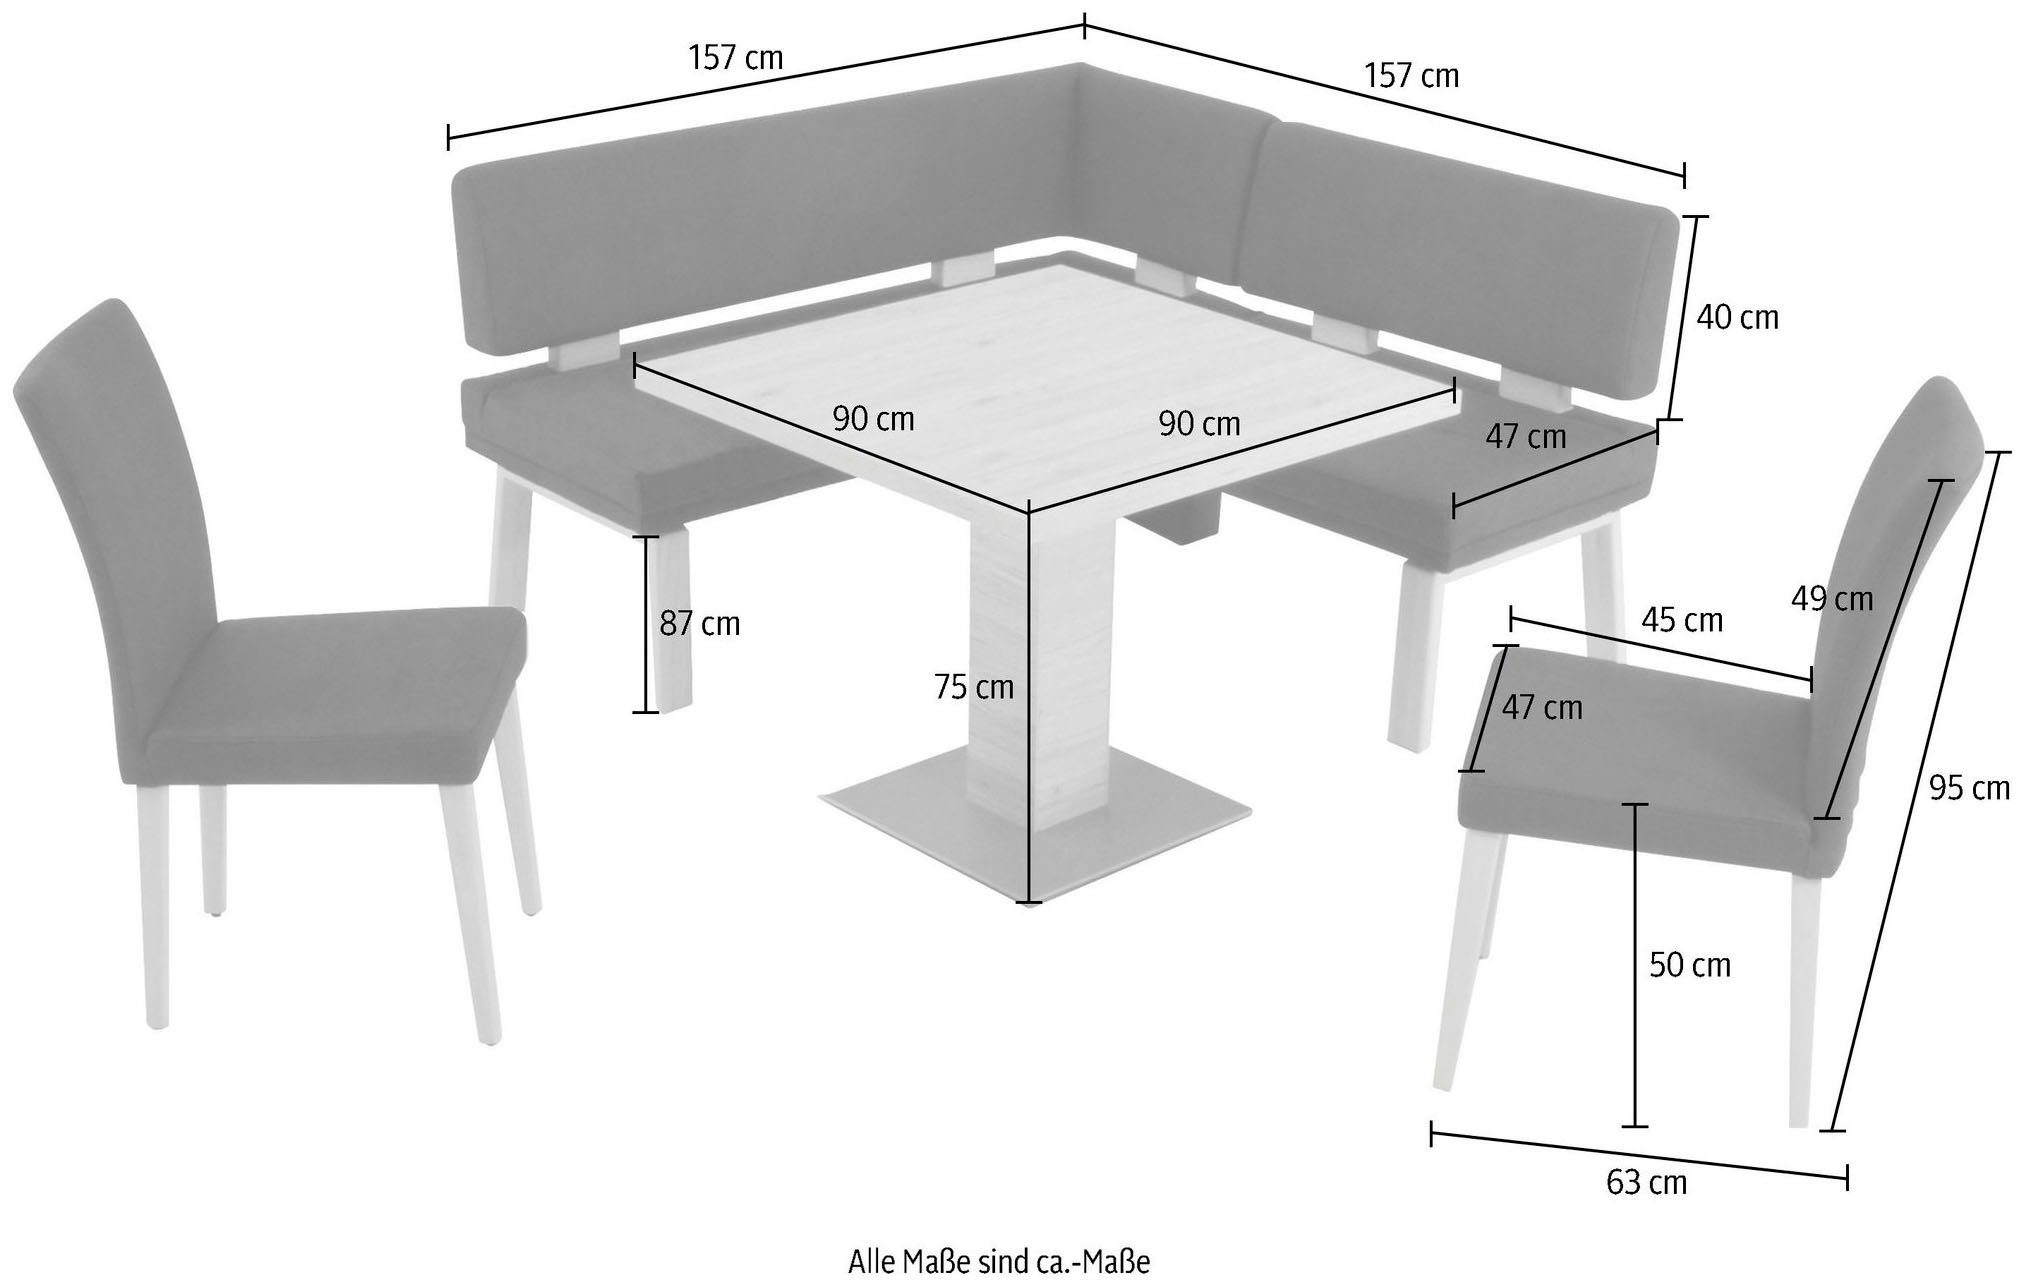 K+W Komfort I, Tisch 4-Fußholzstühle Santos Wohnen Eckbankgruppe und & zwei Eiche gleichschenklig 90x90cm, darkbrown 157cm